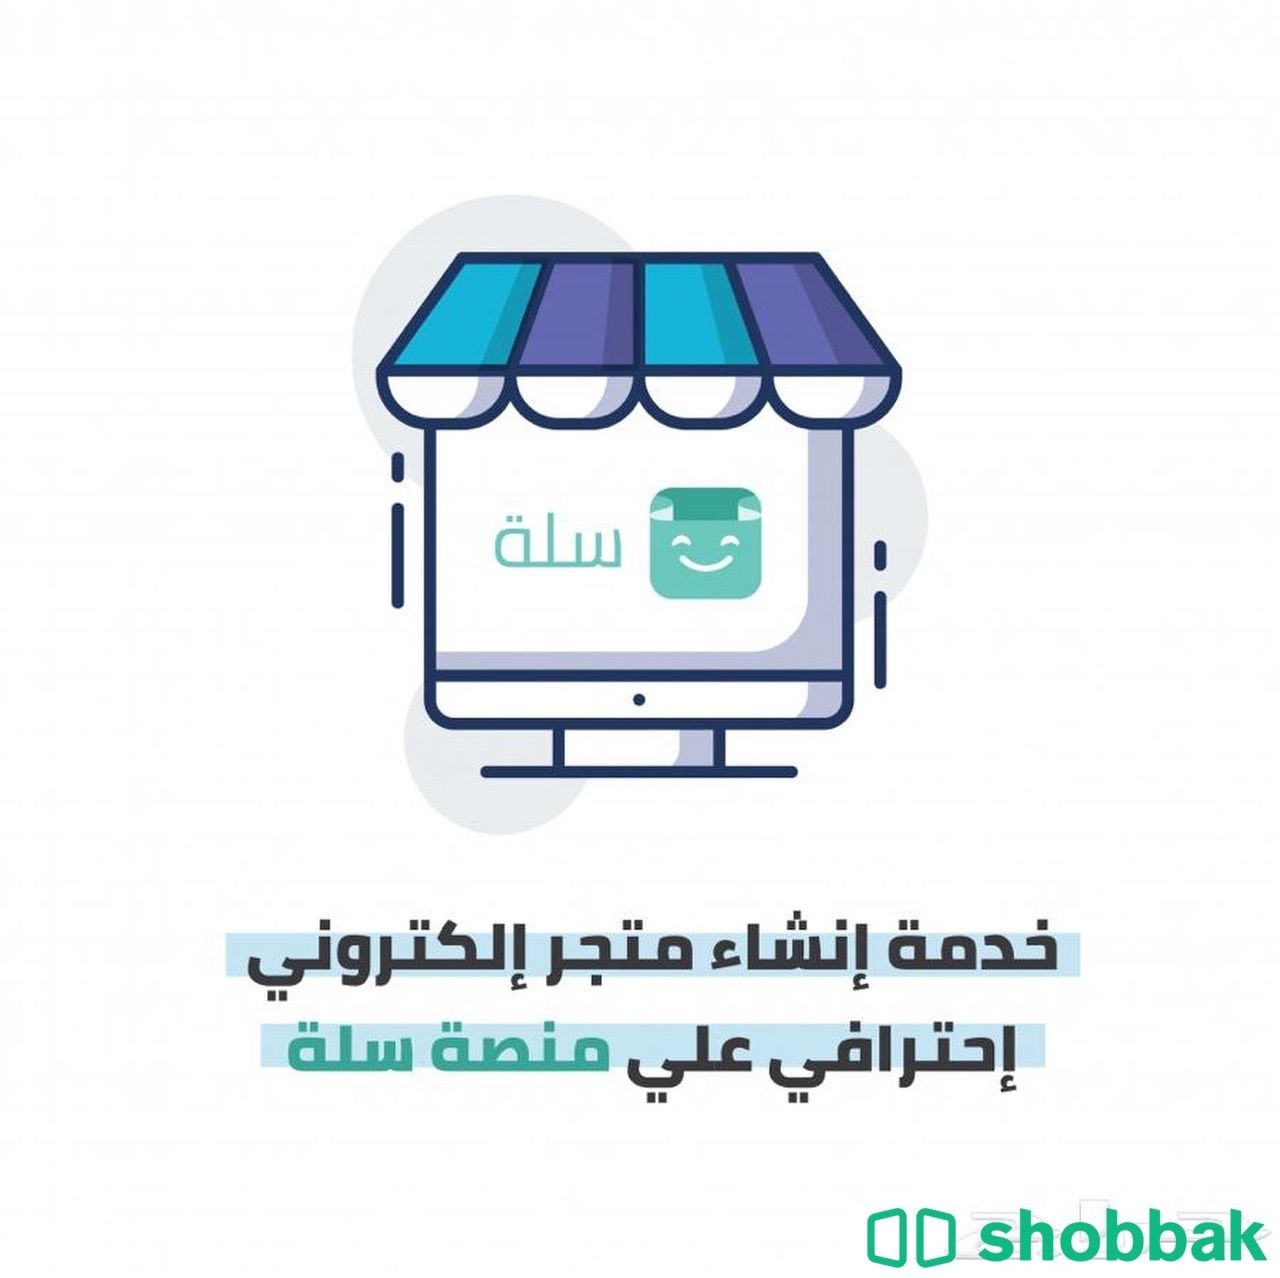 انشاء متجر سلة بشكل احترافي مع الضمان الذهبي Shobbak Saudi Arabia